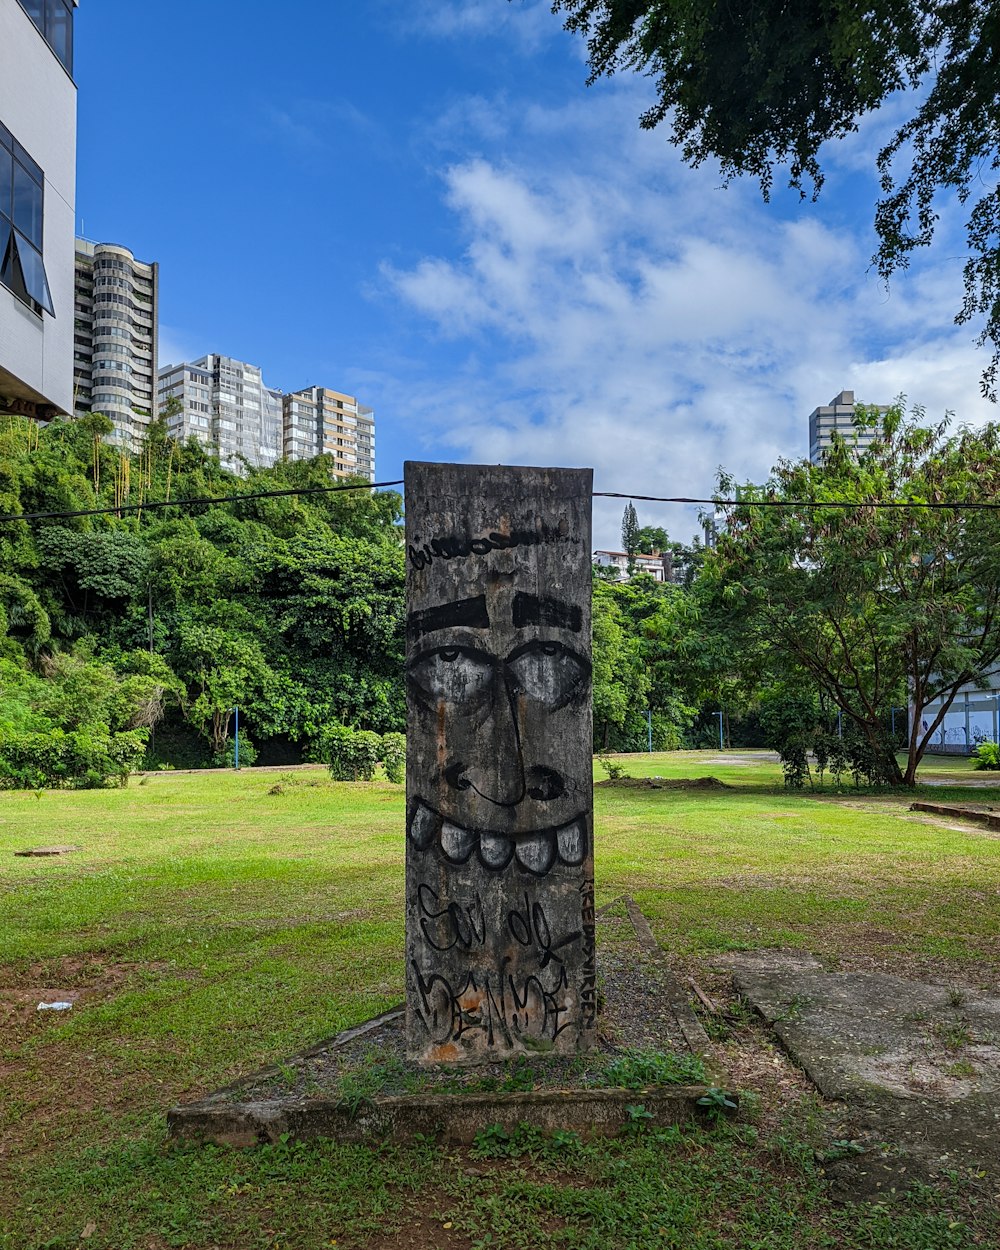 a stone pillar in a park